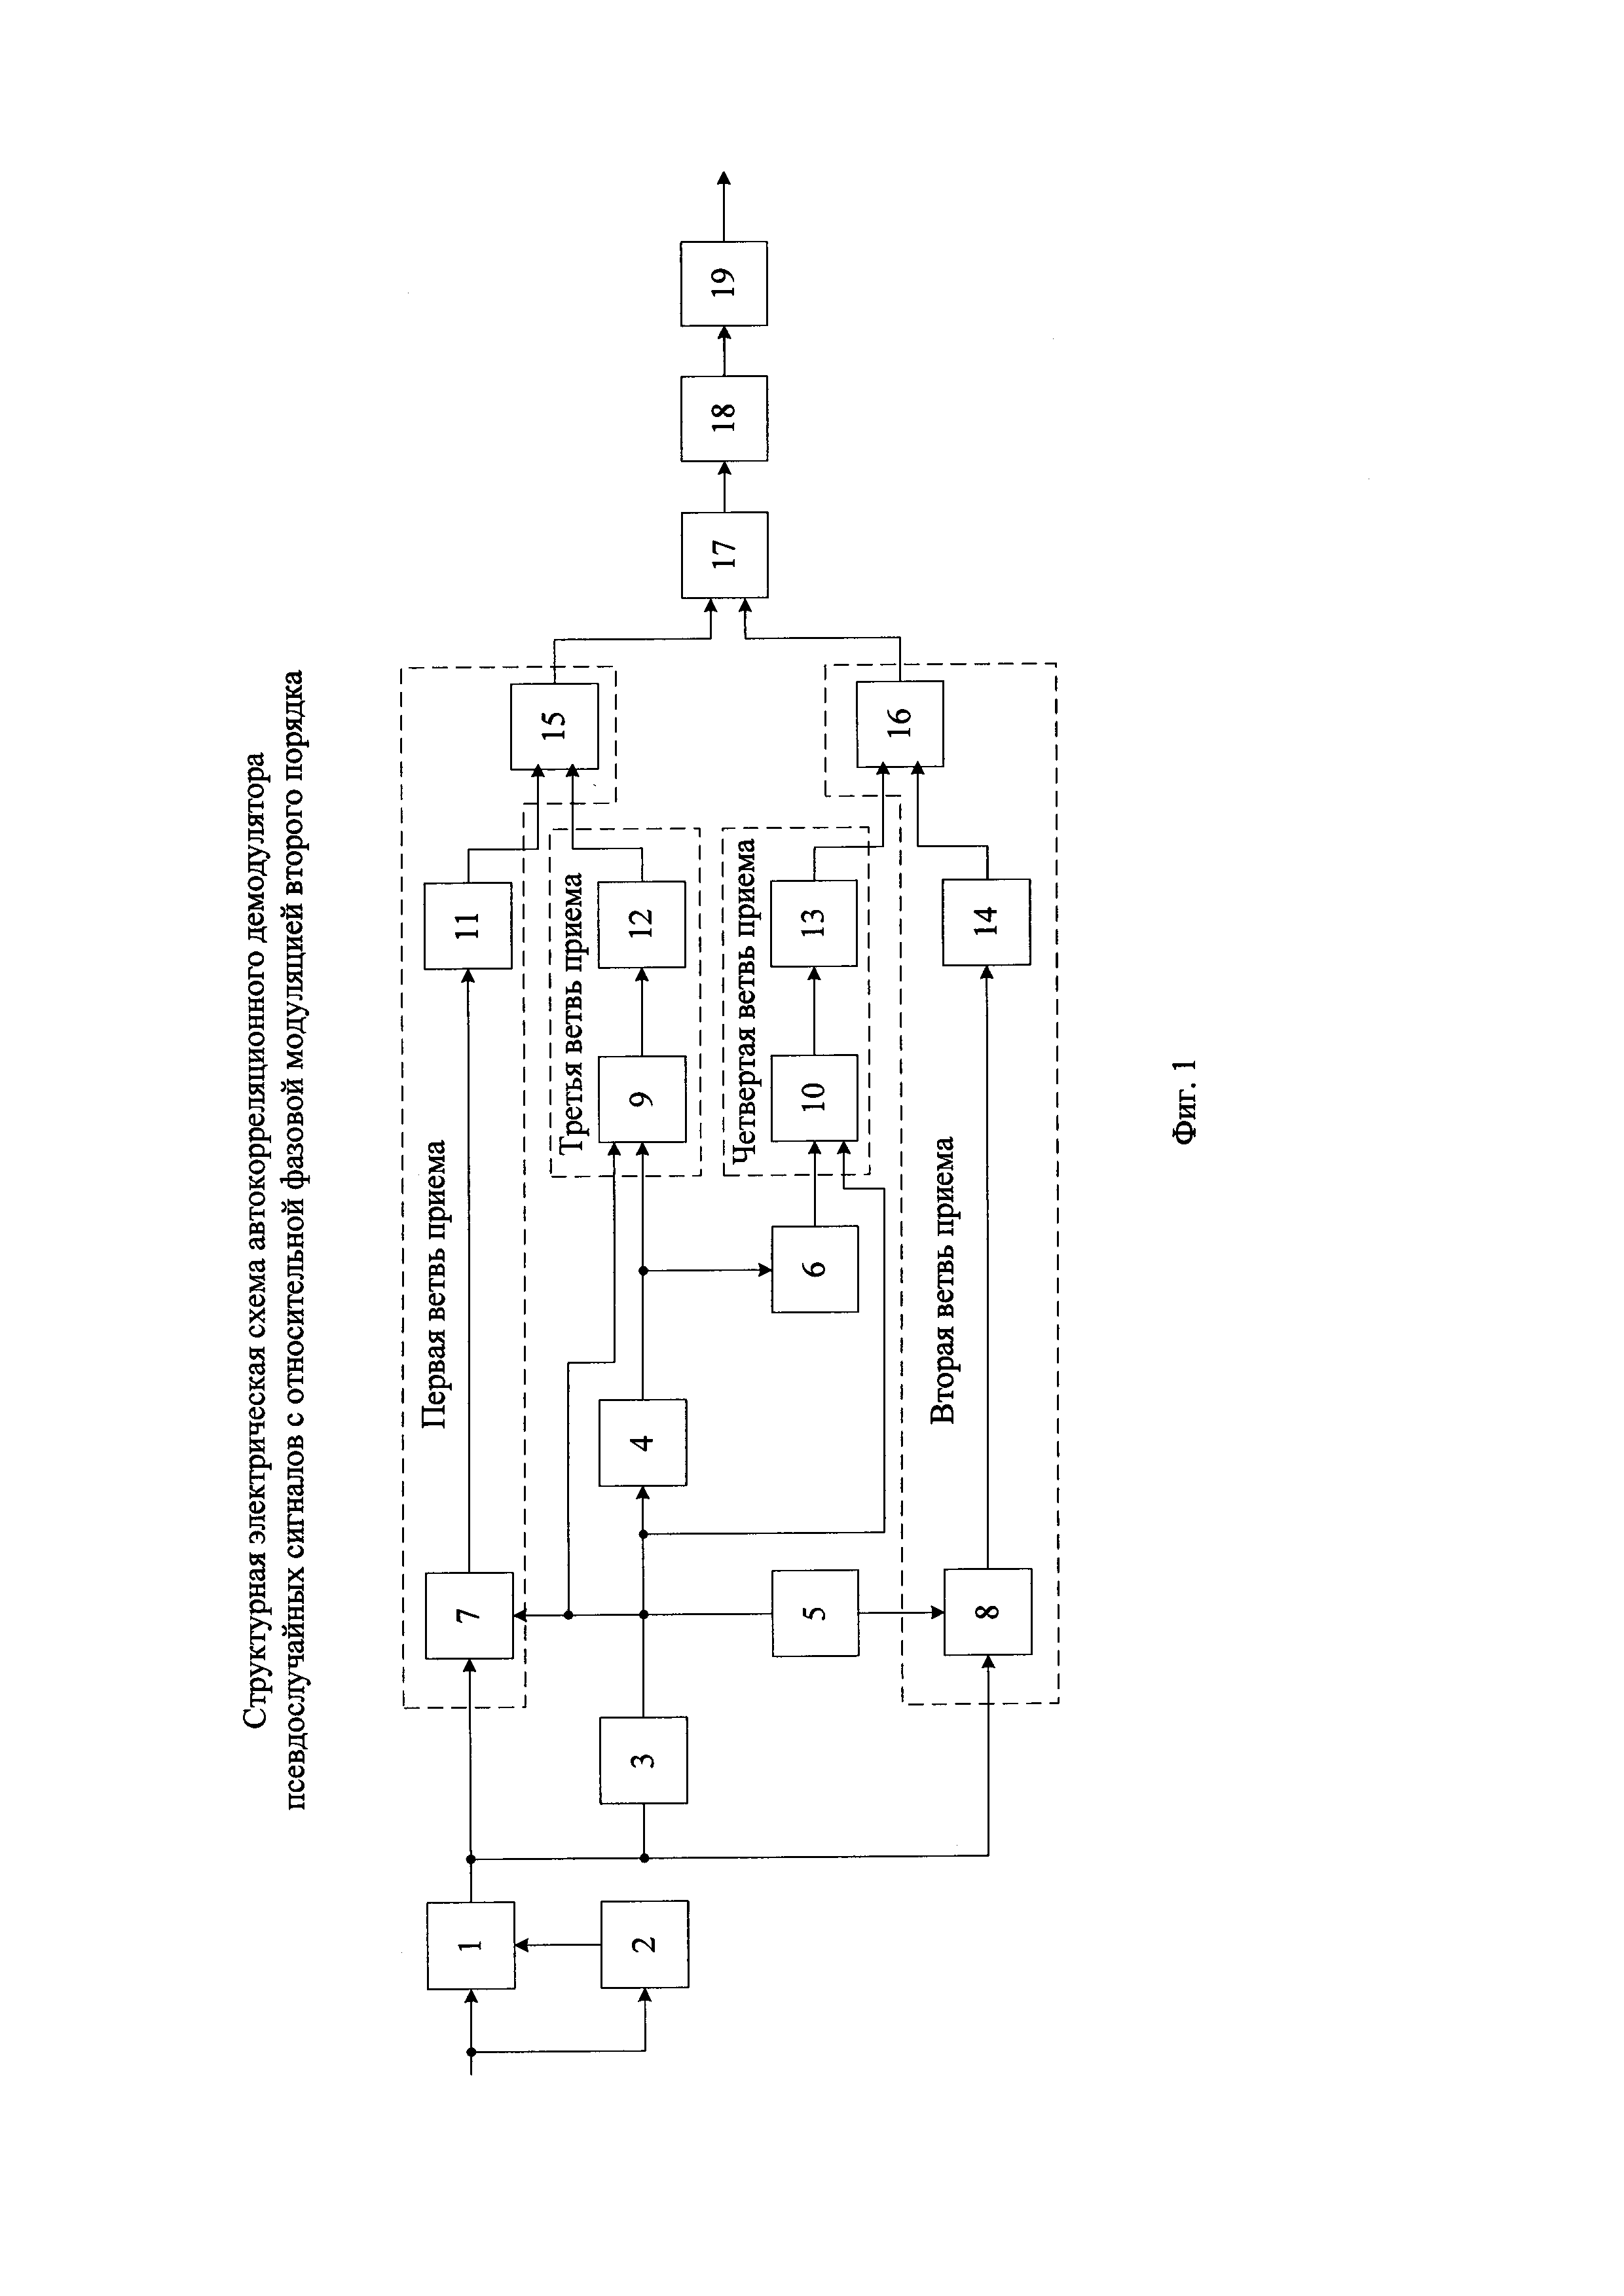 Автокорреляционный демодулятор псевдослучайных сигналов с относительной фазовой модуляцией второго порядка